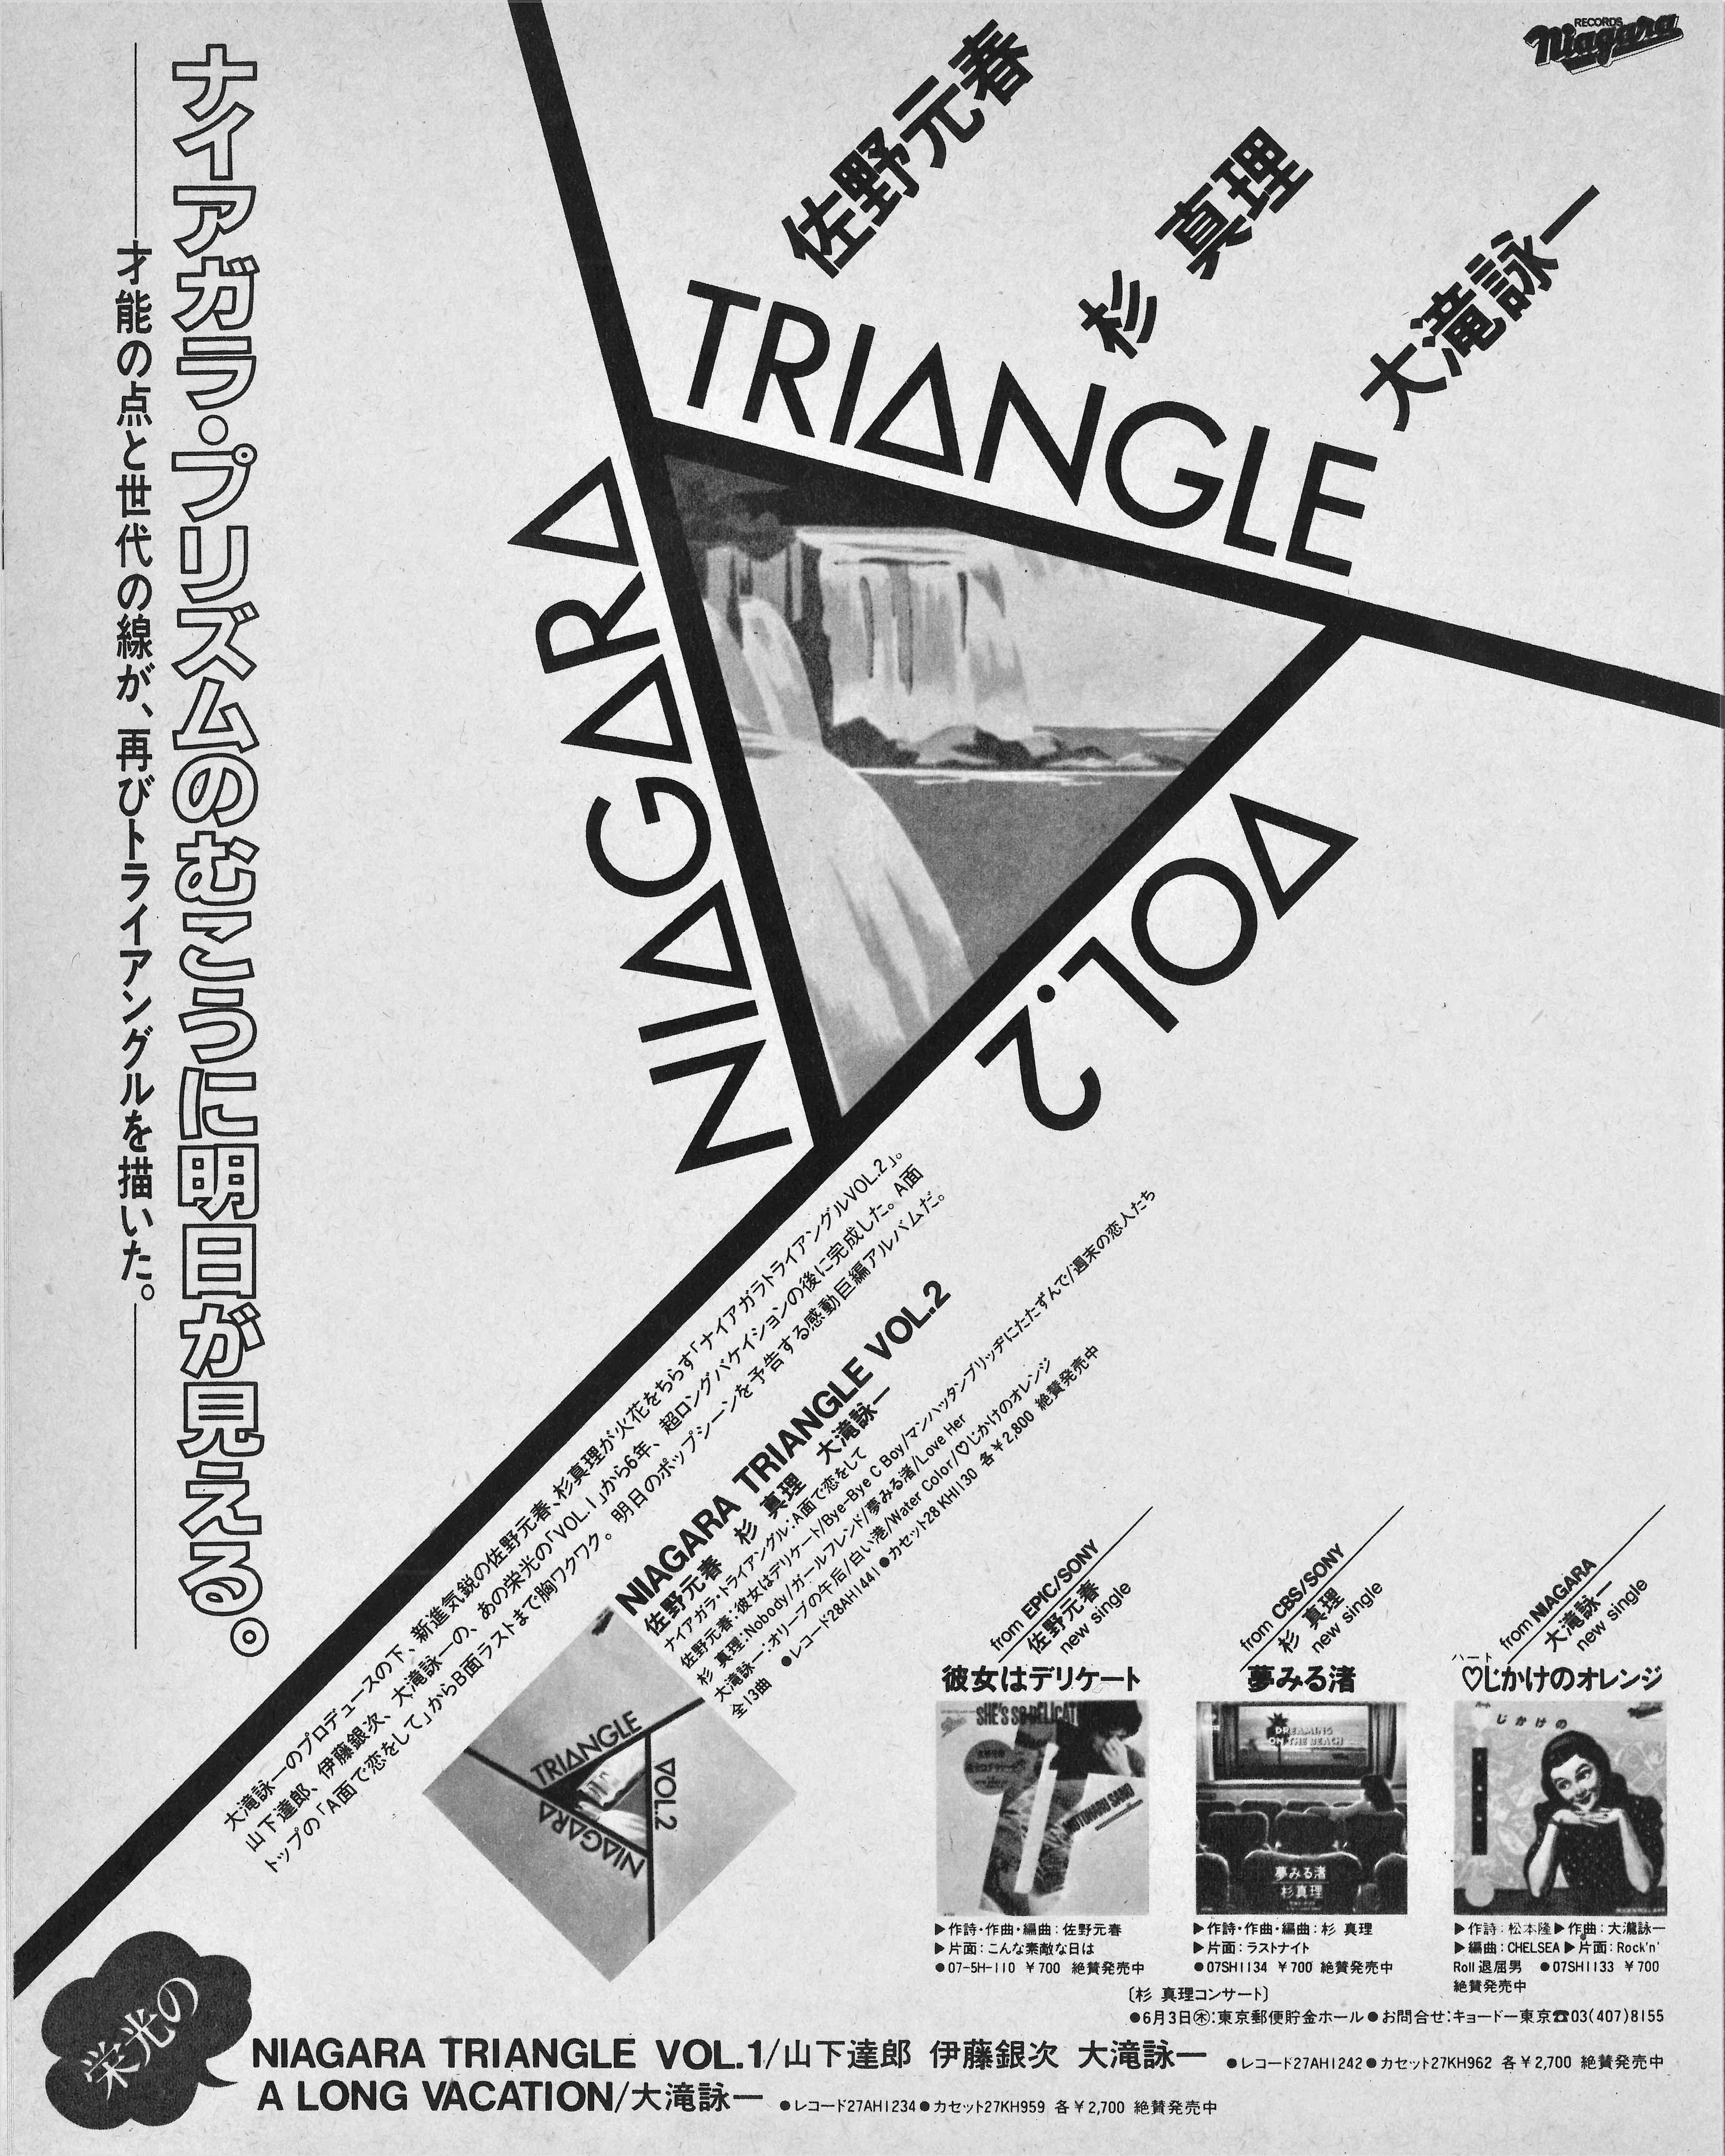 広告『NIAGARA TRIANGLE VOL.2』 音楽雑誌『GB』1982年5月号より｜otonano ウェブで読める大人の音楽誌